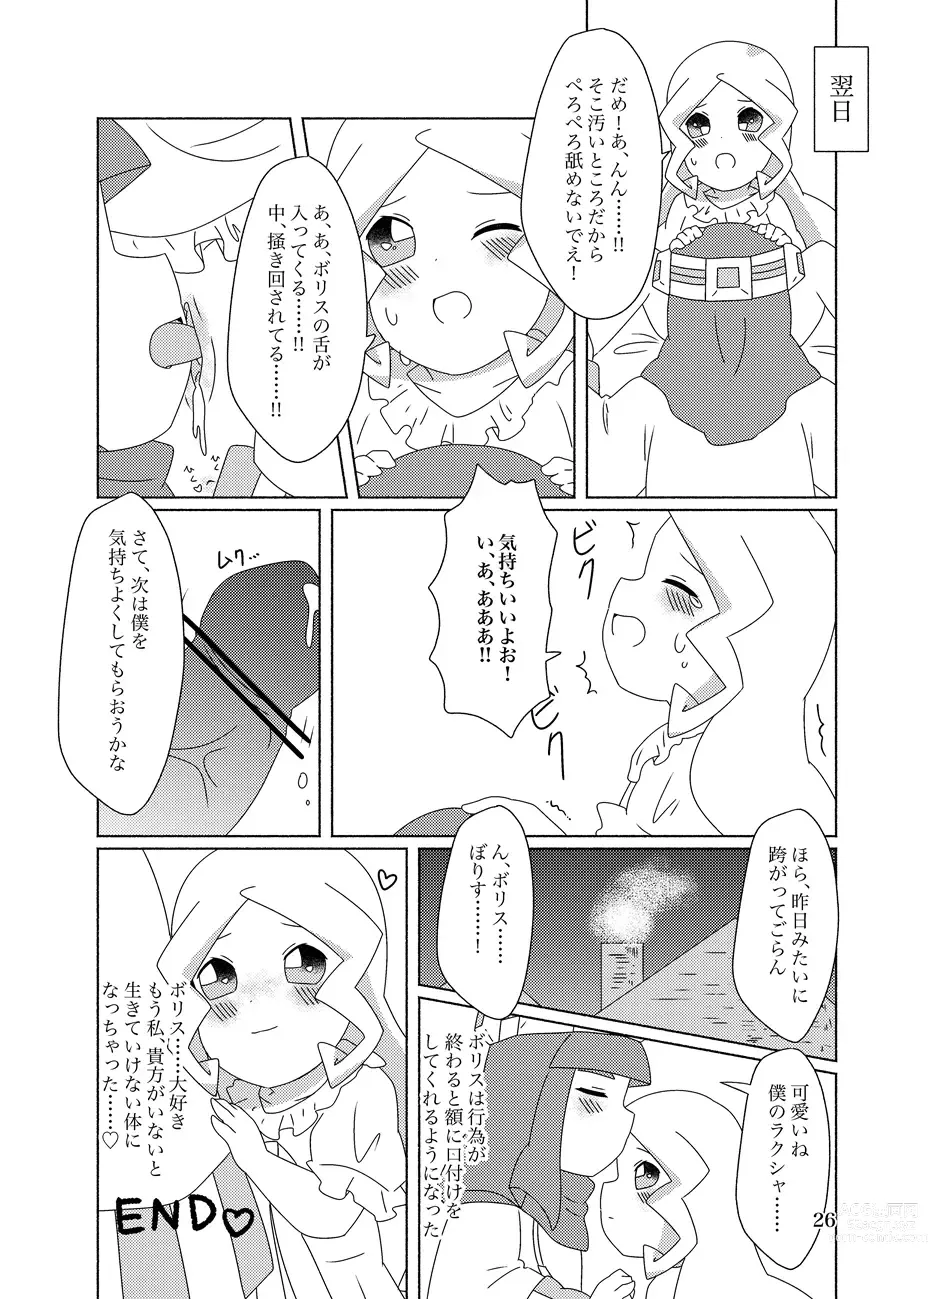 Page 26 of doujinshi Hachimitsu Sake to Milk